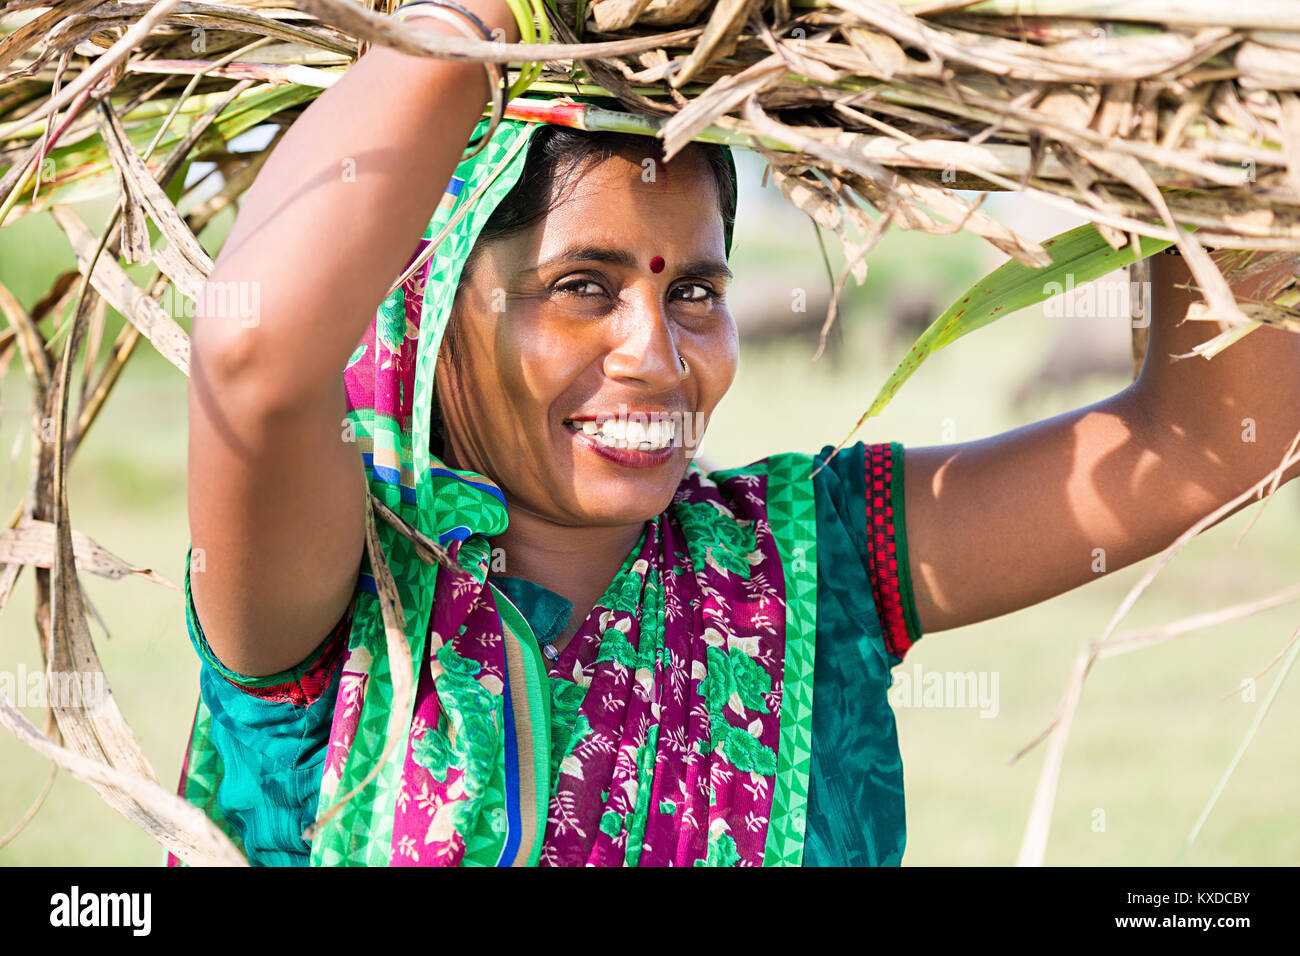 1 villageois ruraux indiens Dame transportant sur la tête des mauvaises herbes Bouquet Banque D'Images